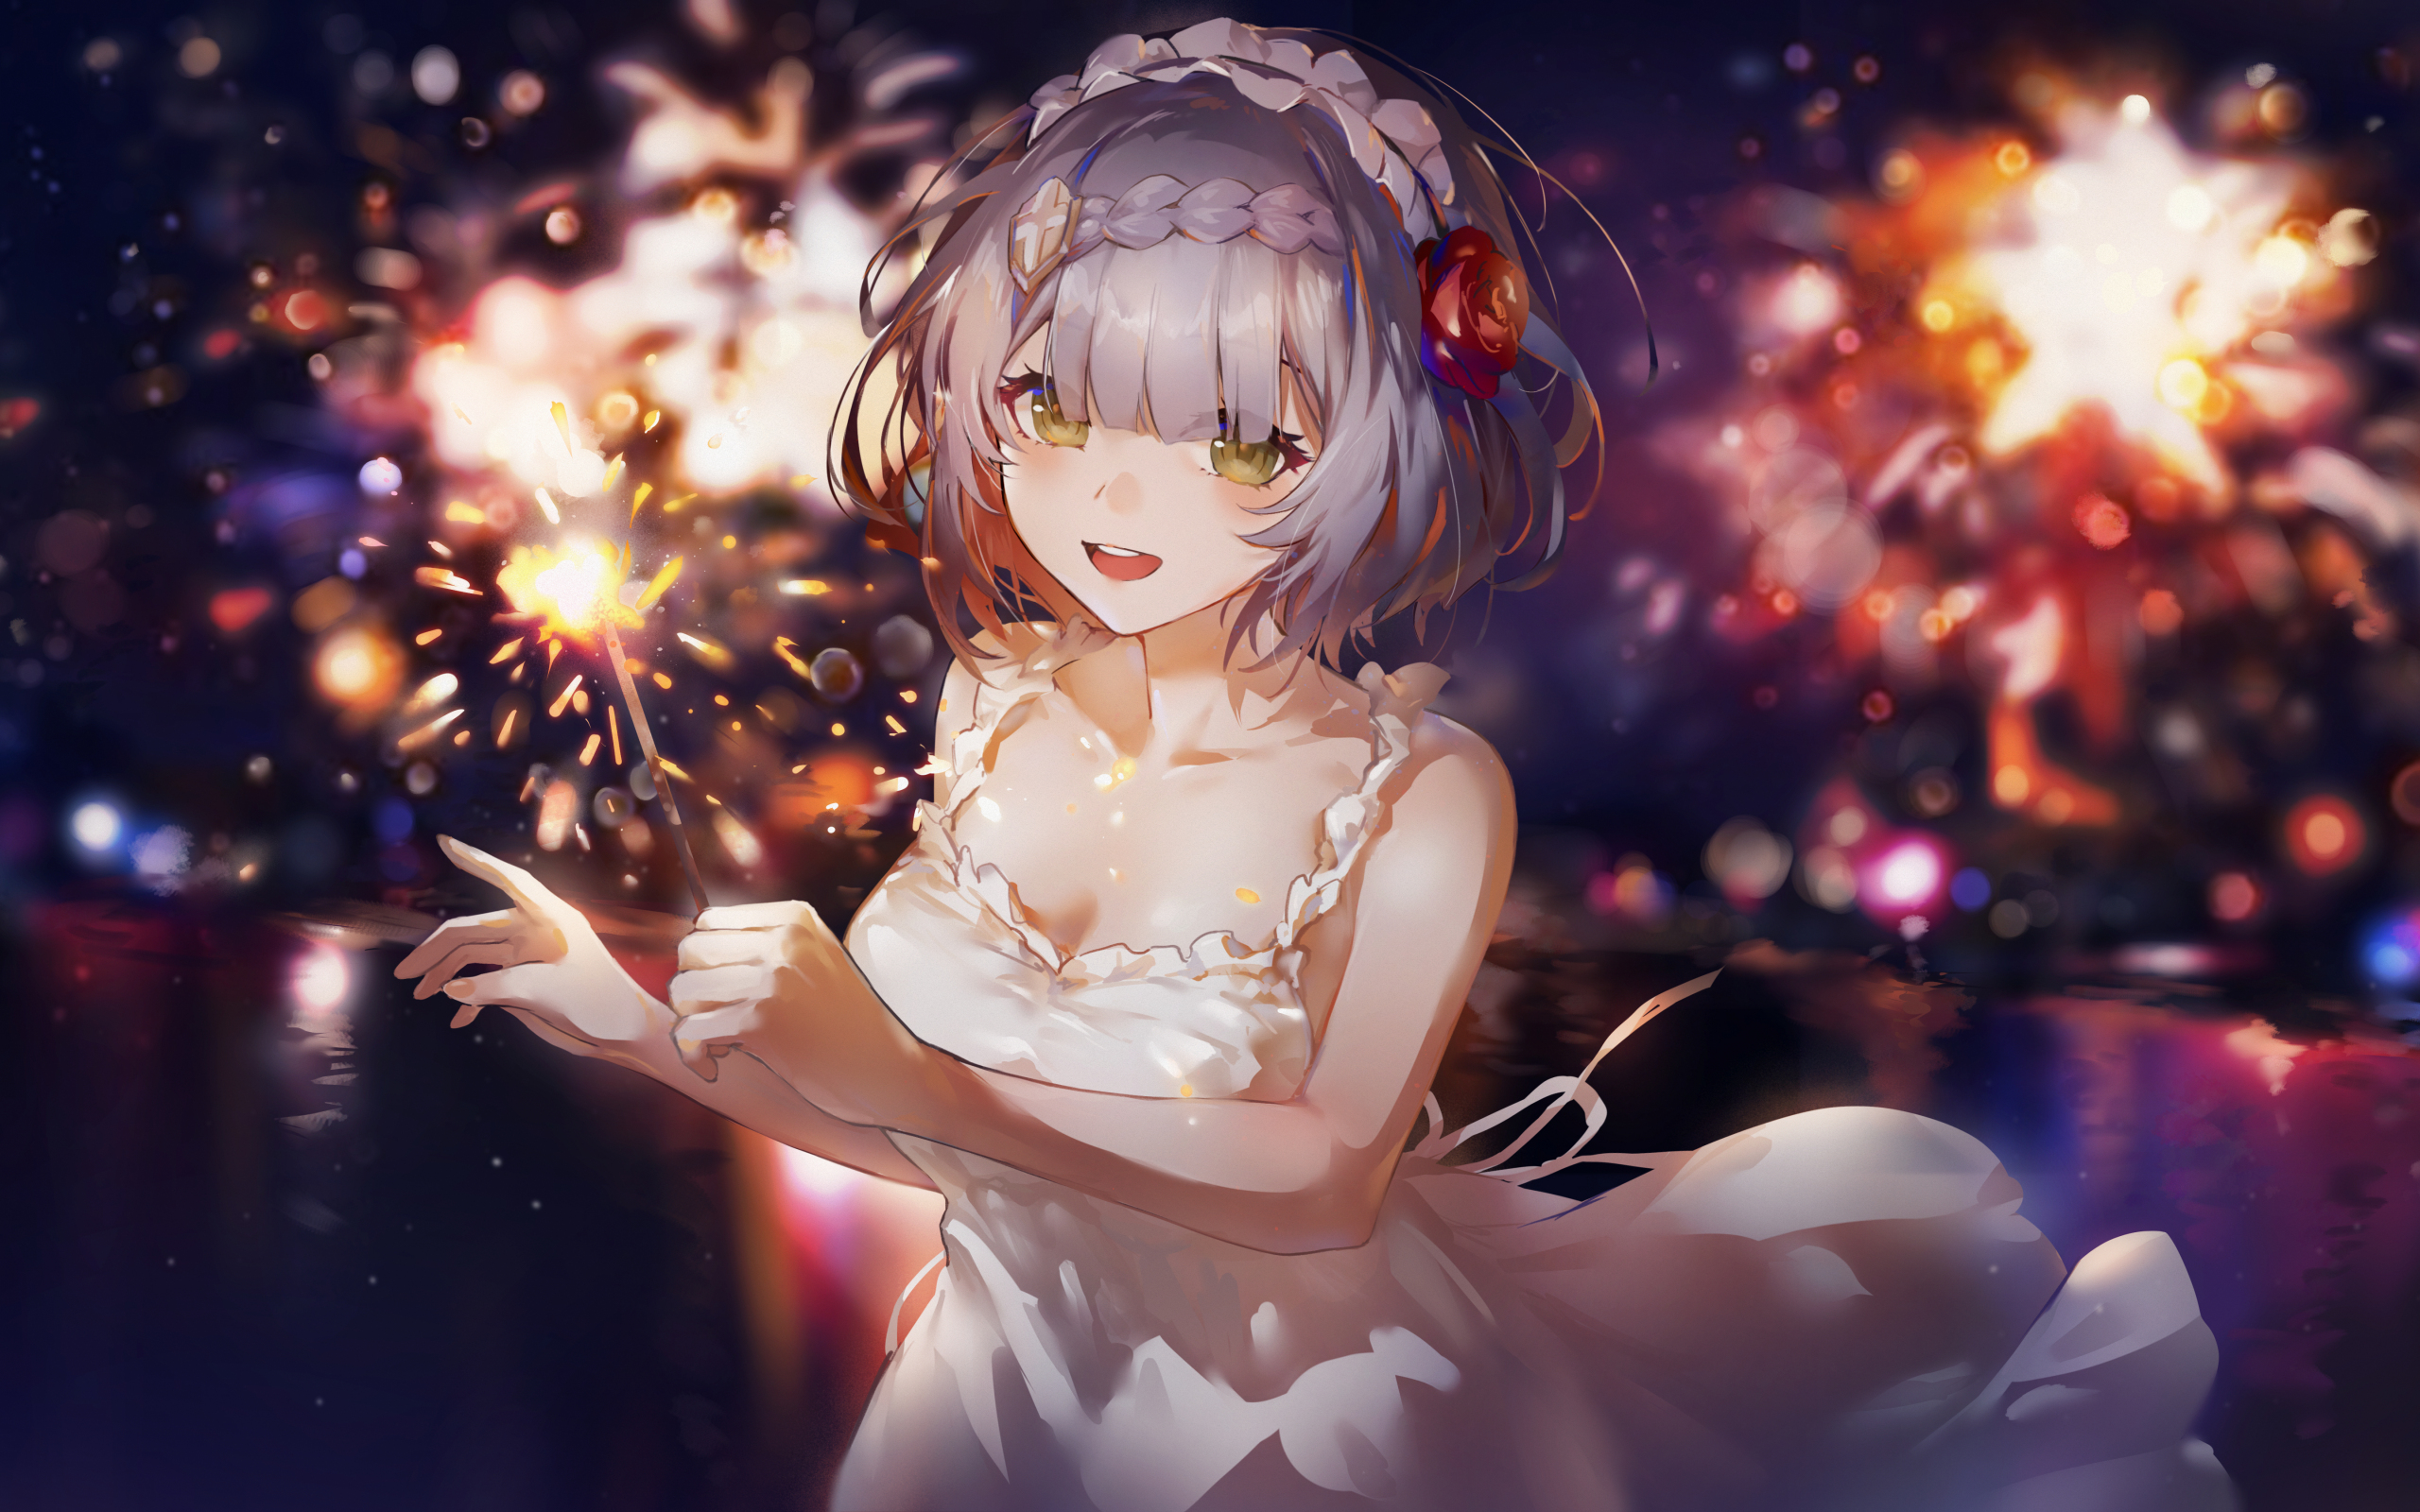 White dress, cute anime girl, art, 2560x1600 wallpaper